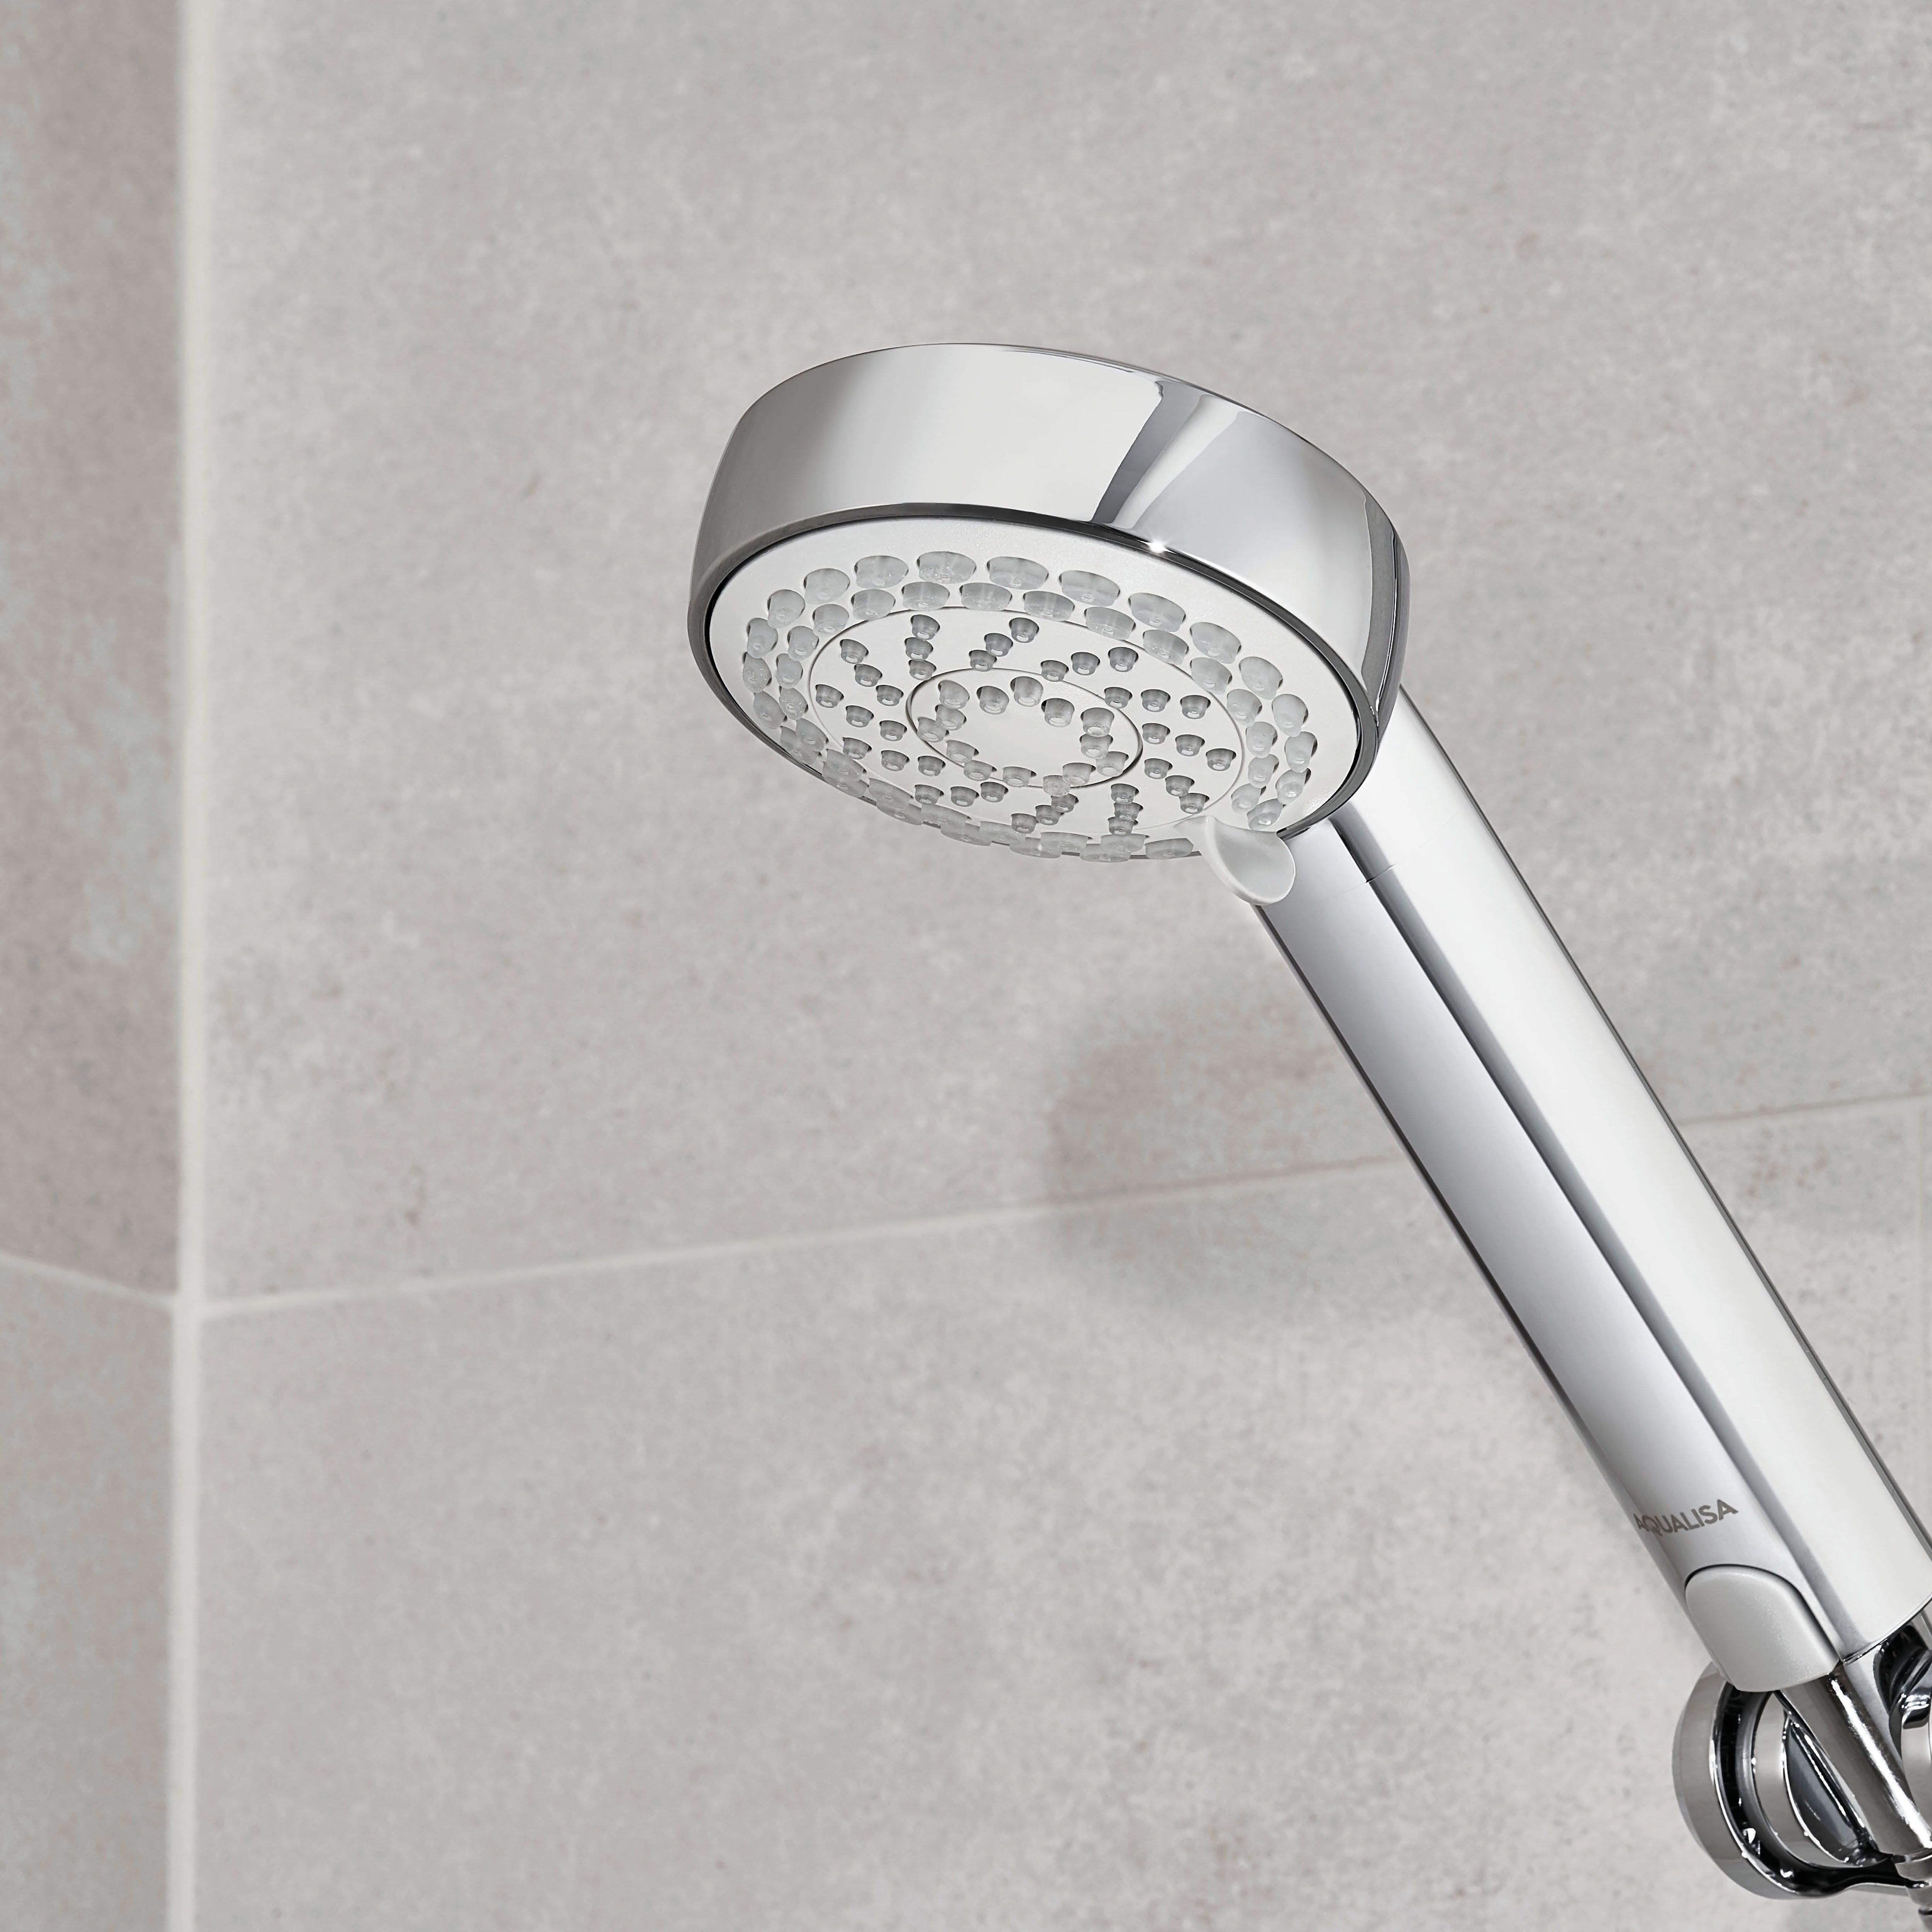 Aqualisa Visage Smart Concealed valve Gravity-pumped Wall fed Smart Digital Shower with Adjustable Shower head